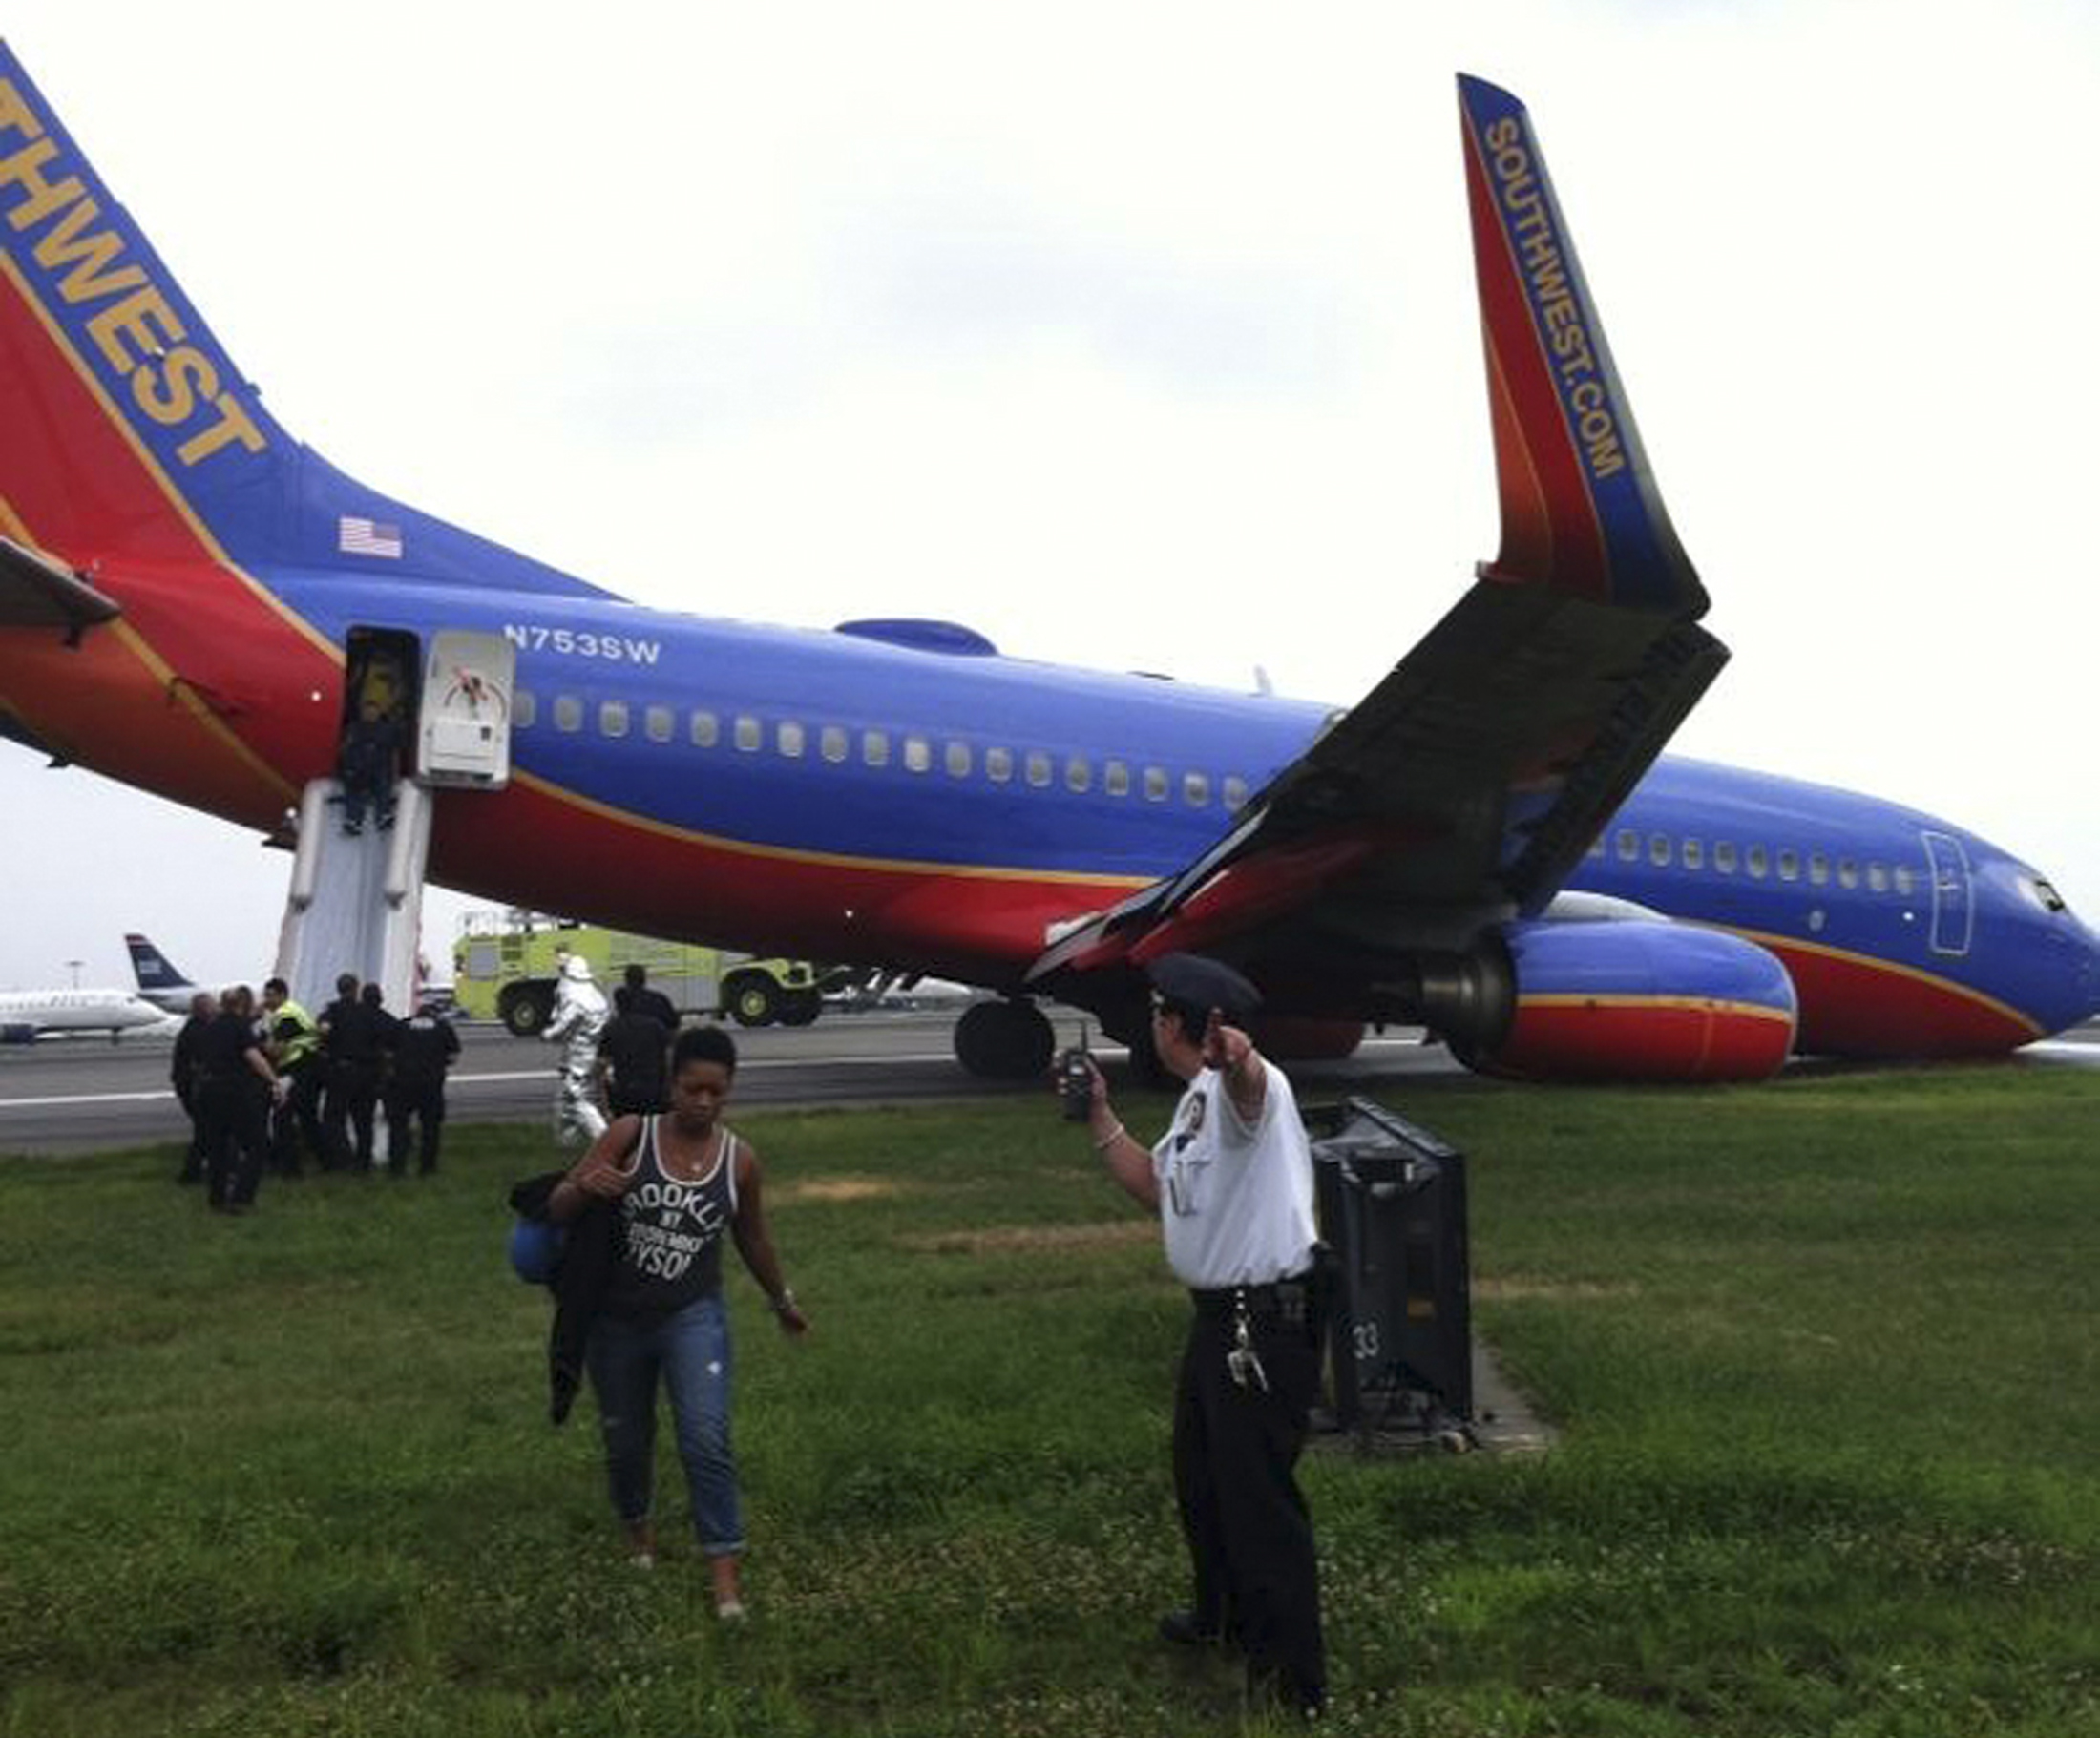 Η εντολή εκκένωσης του αεροσκάφους ήταν άμεση - ΦΩΤΟΓΡΑΦΙΑ REUTERS